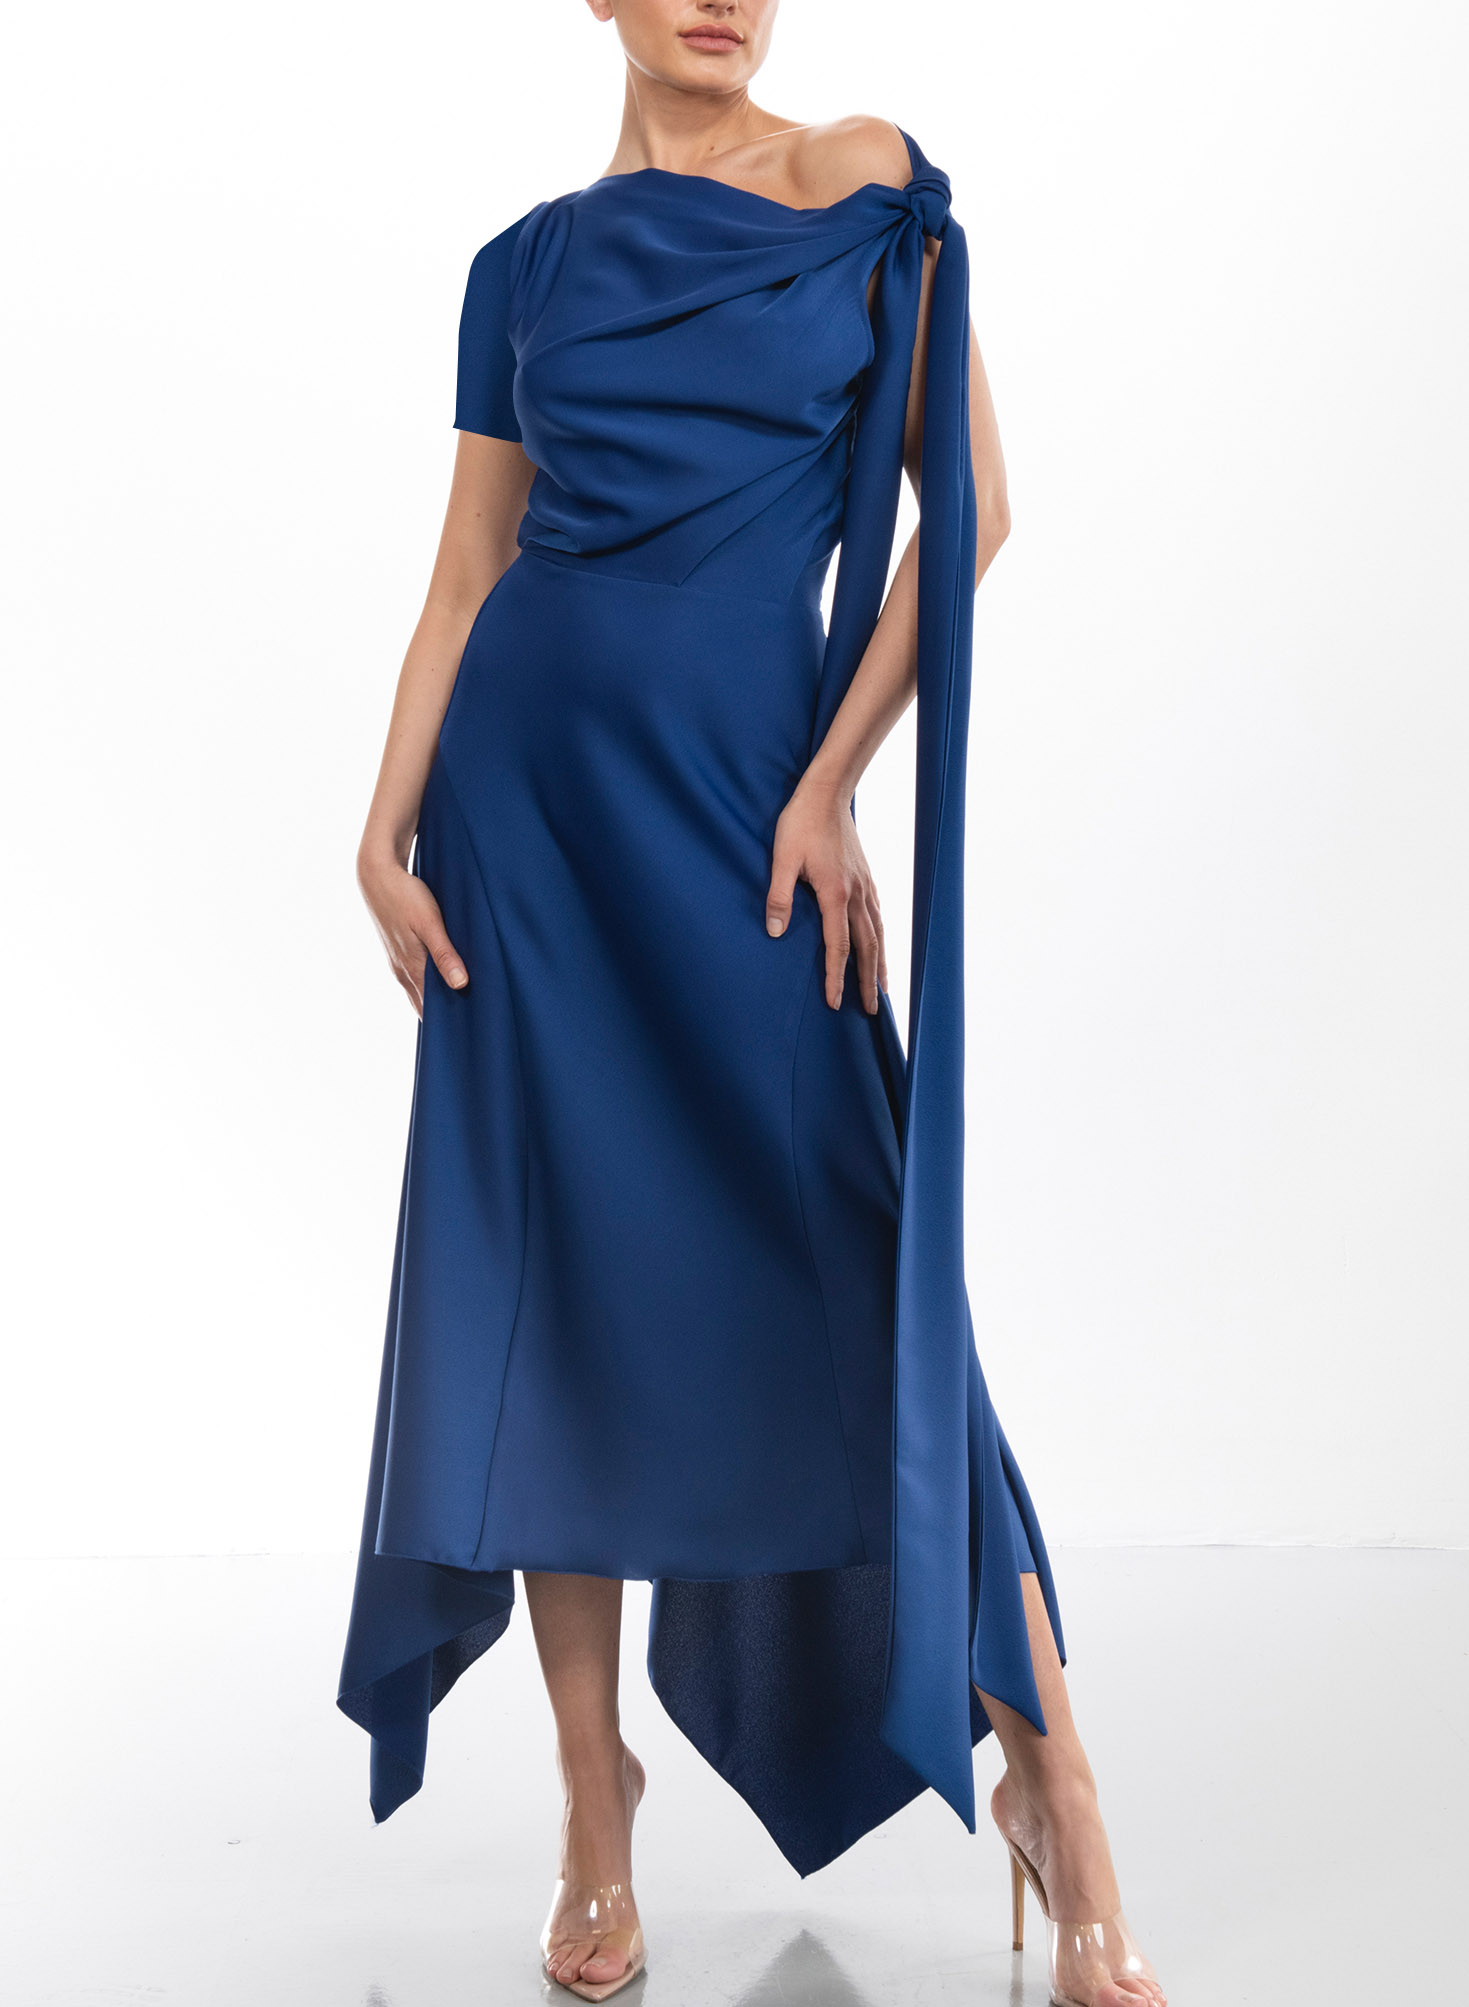 Asymmetrical A-Line Cold Shoulder Cocktail Dresses